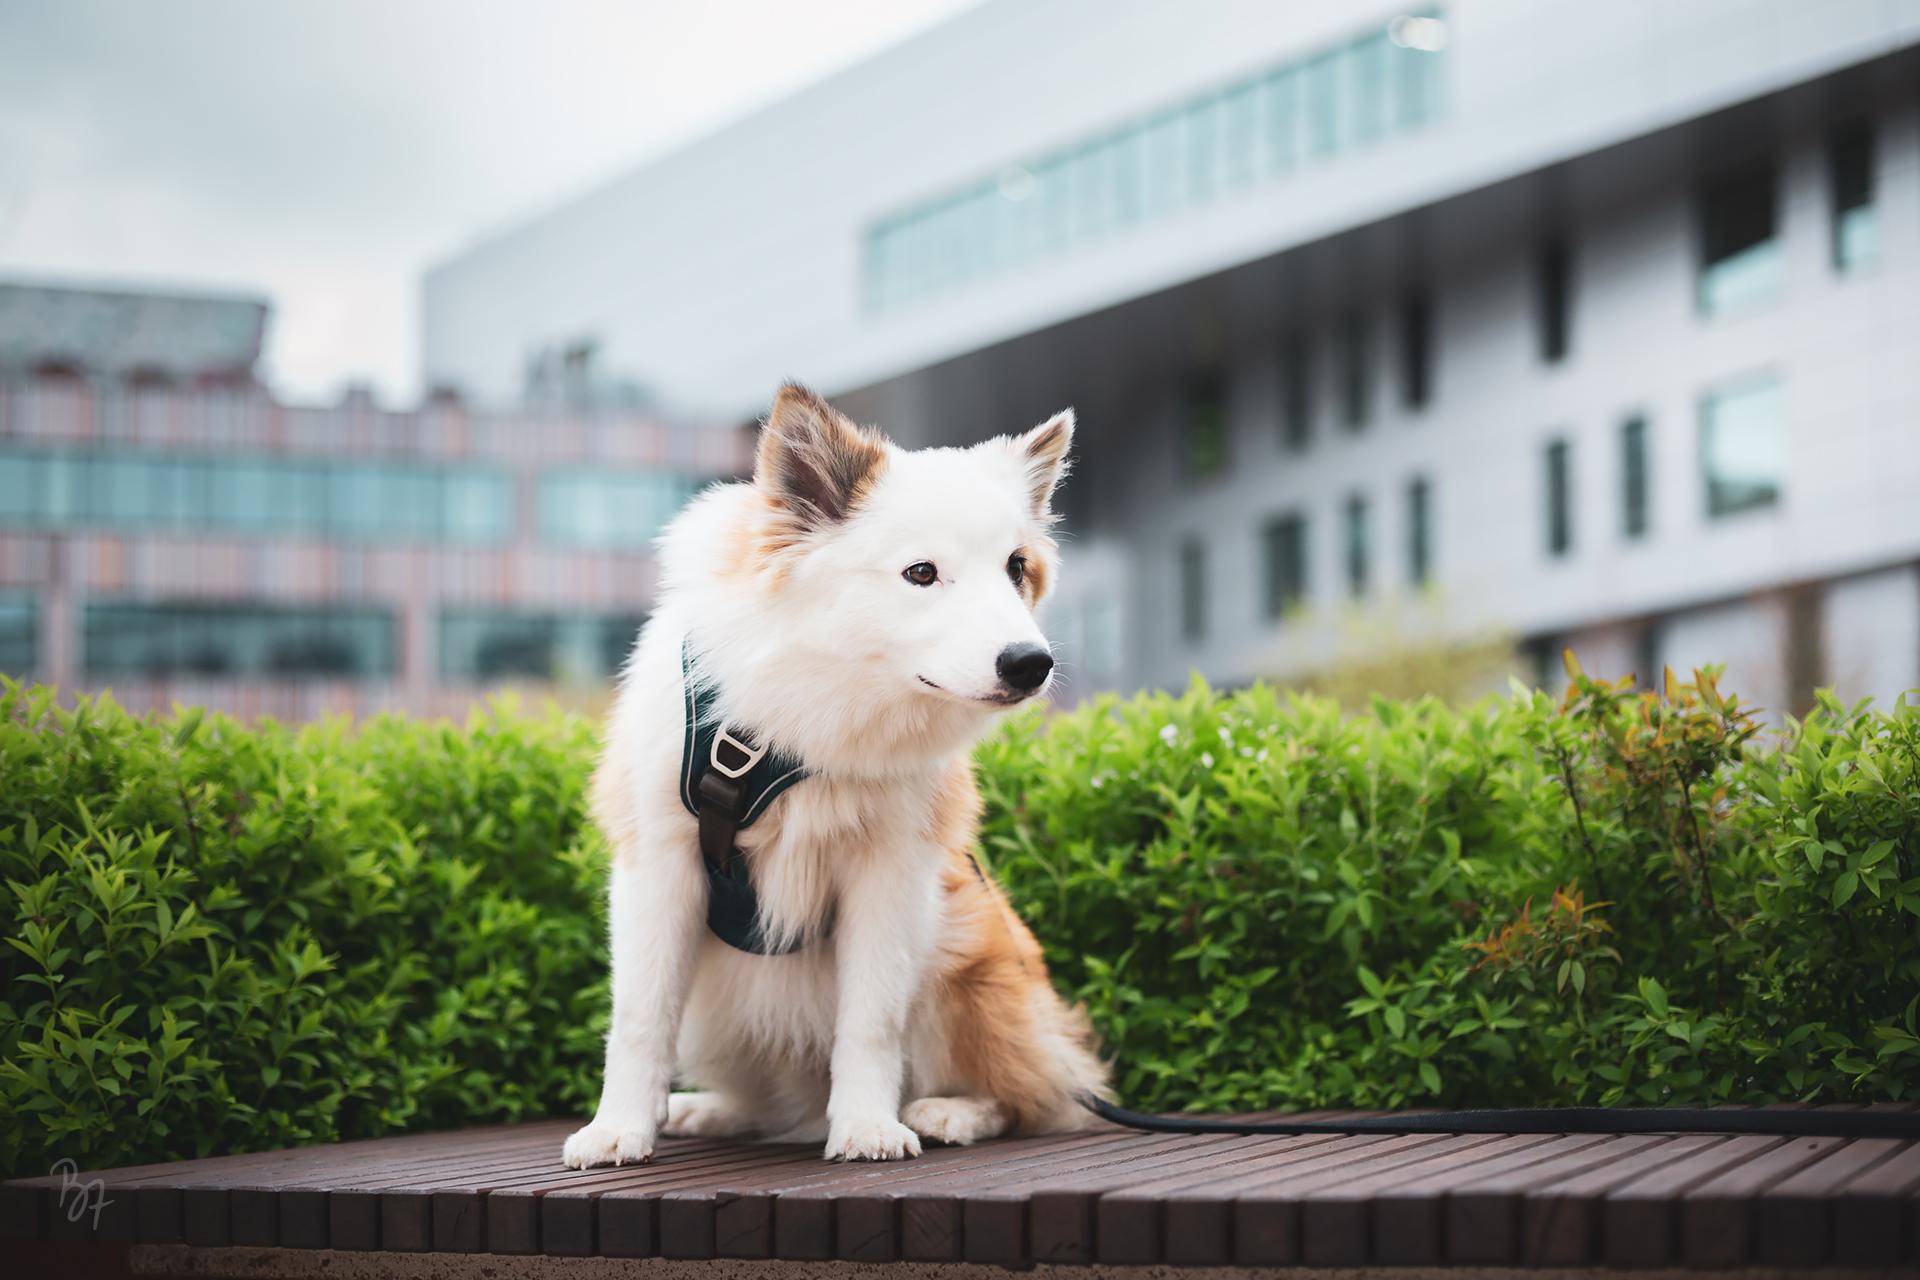 Islandhund Bolti sitzt auf einer Bank vor urbaner Kulisse